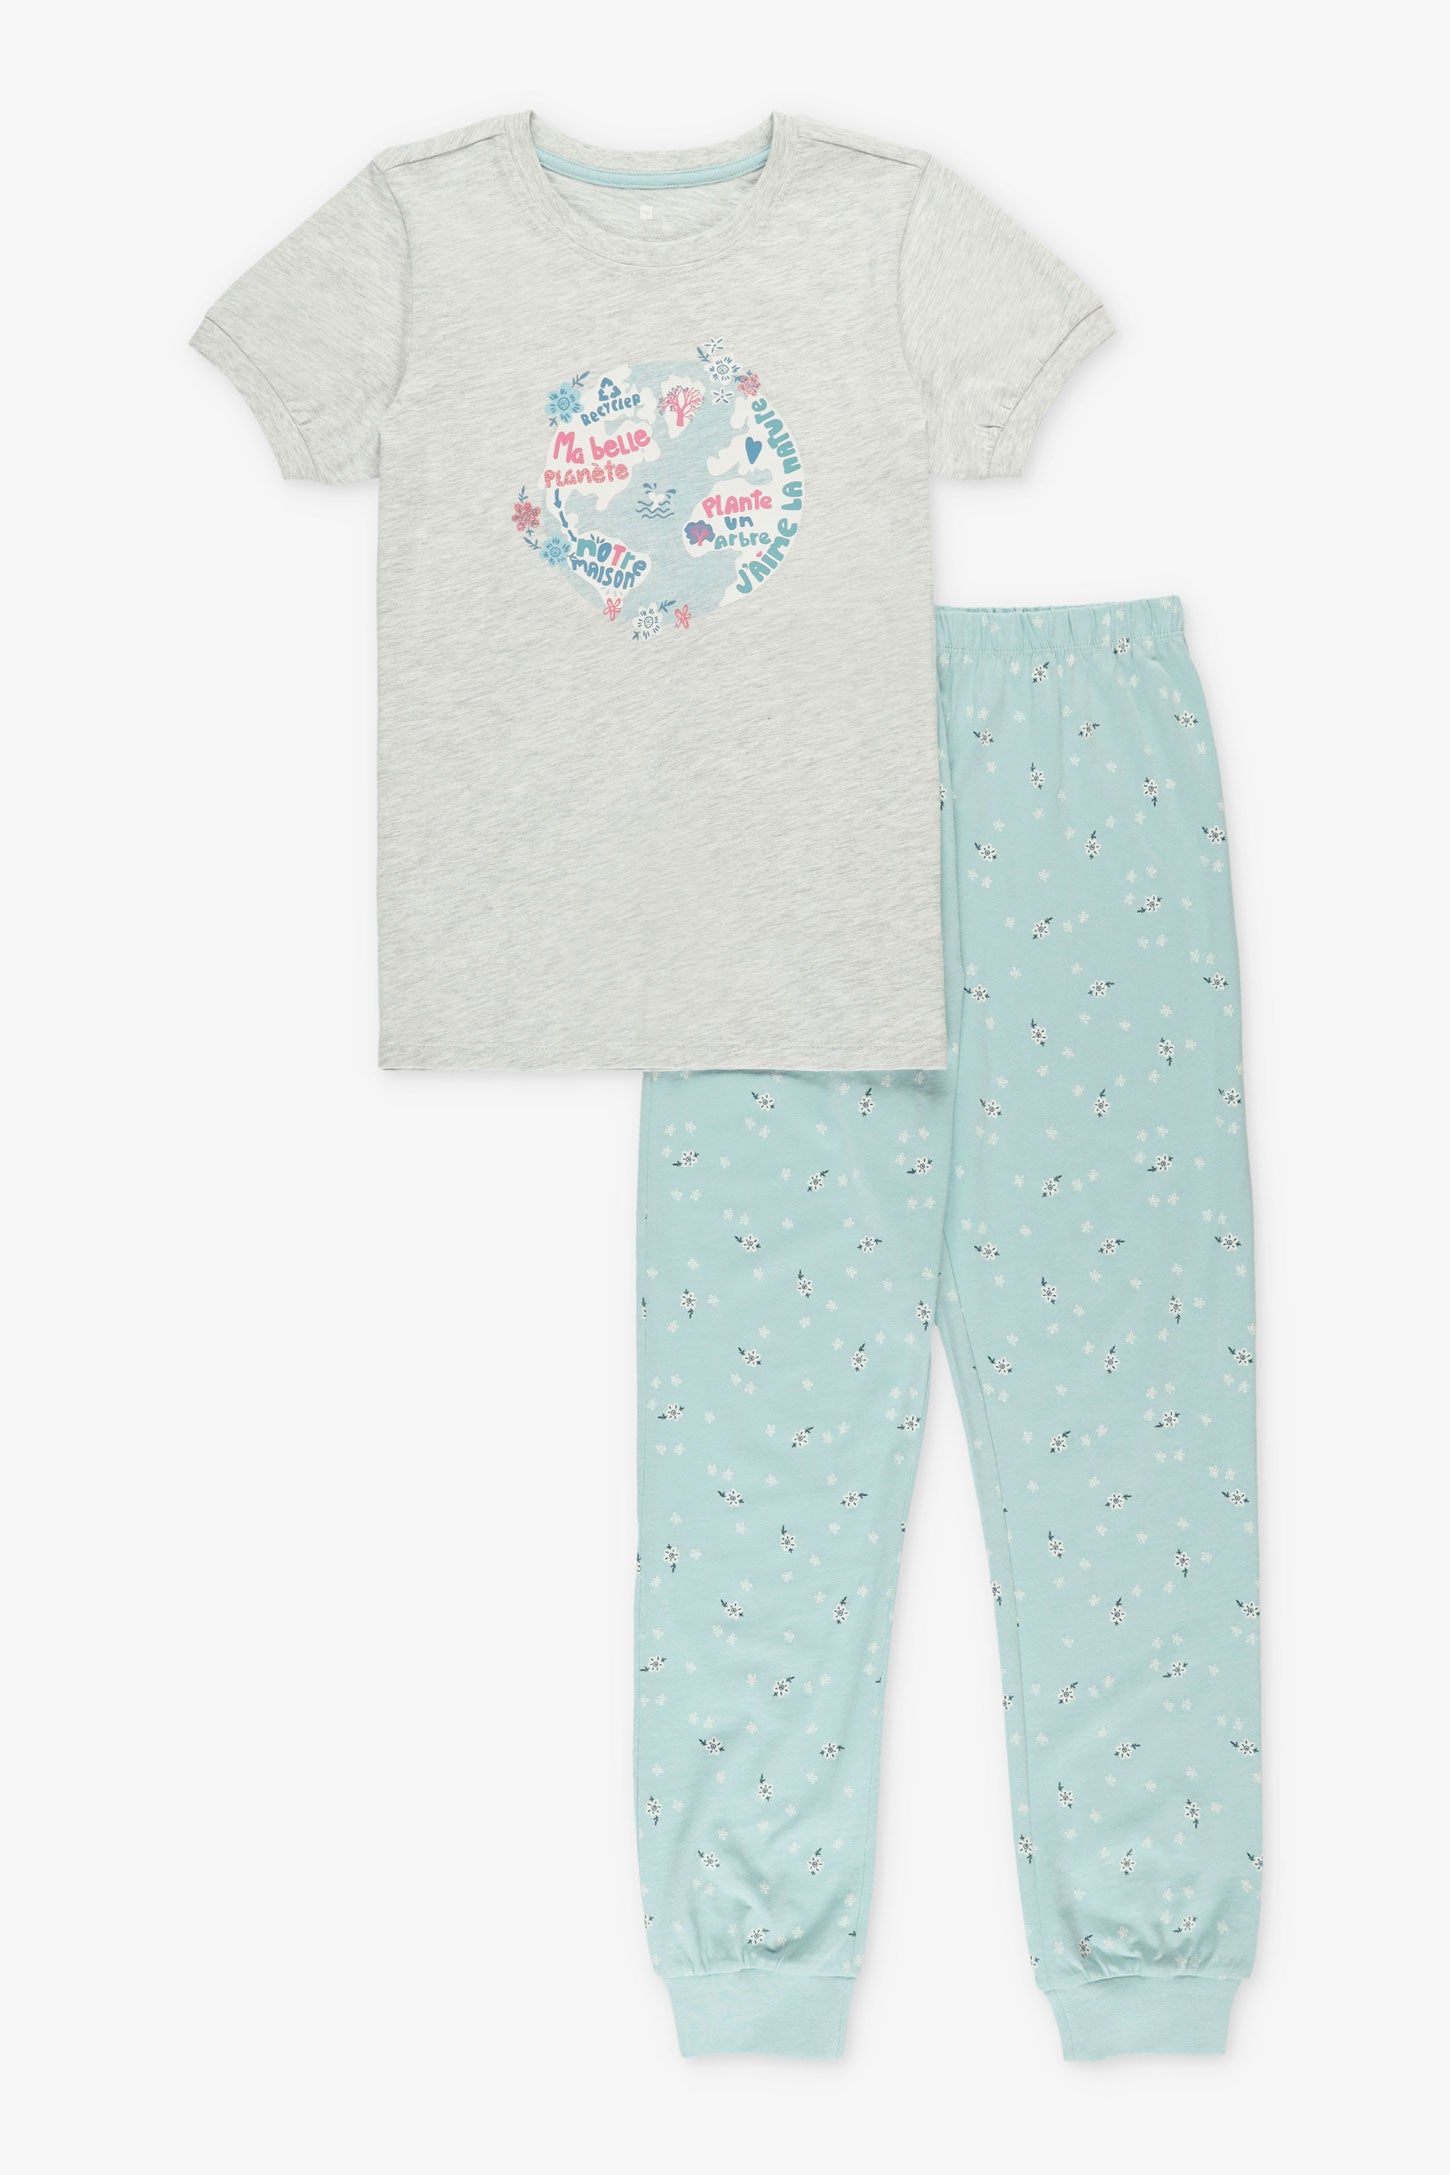 Pyjama 2-pièces en coton, 2/40$ - Ado fille && GRIS